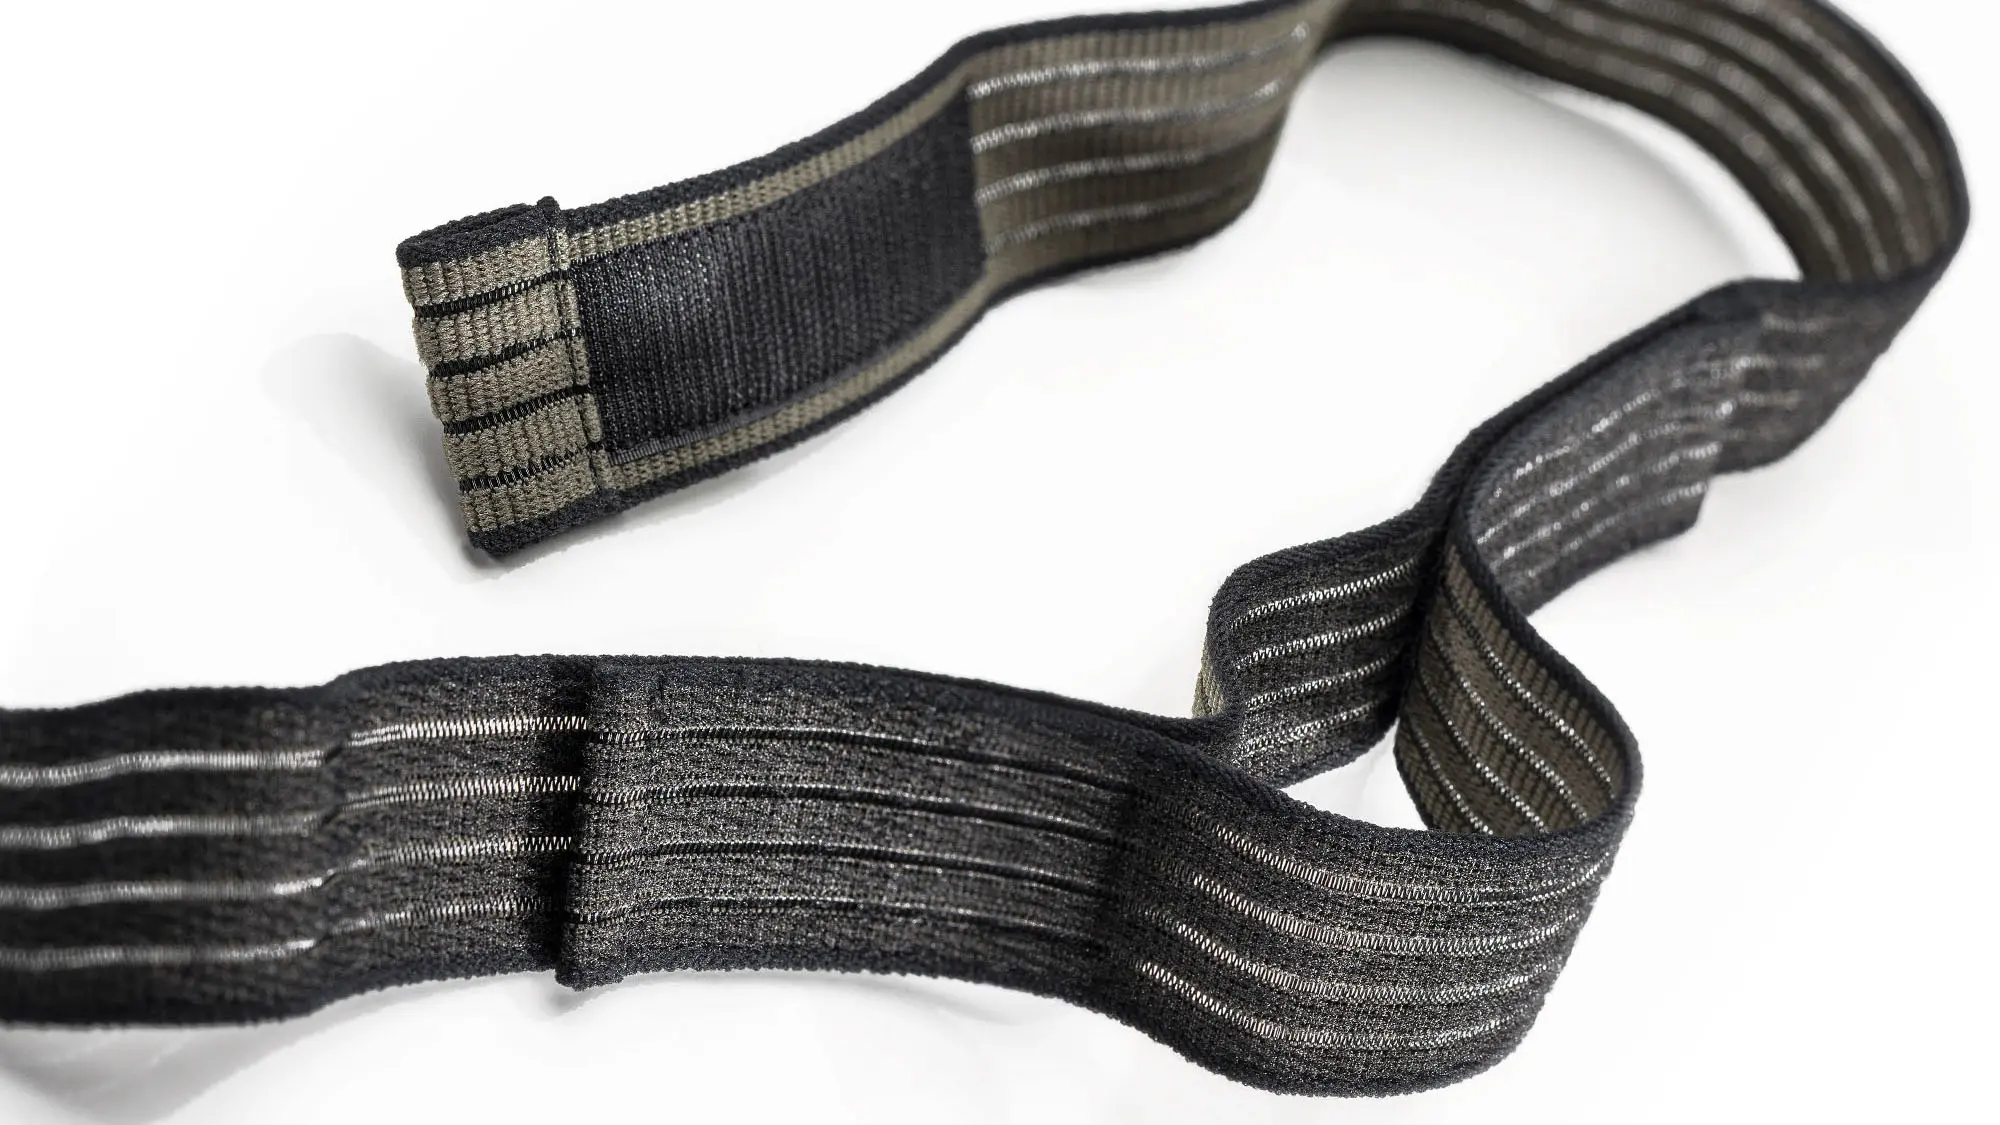 Produktfoto eines schwarz und olivfarbenen und elastischen Klettband auf weißem Hintergrund